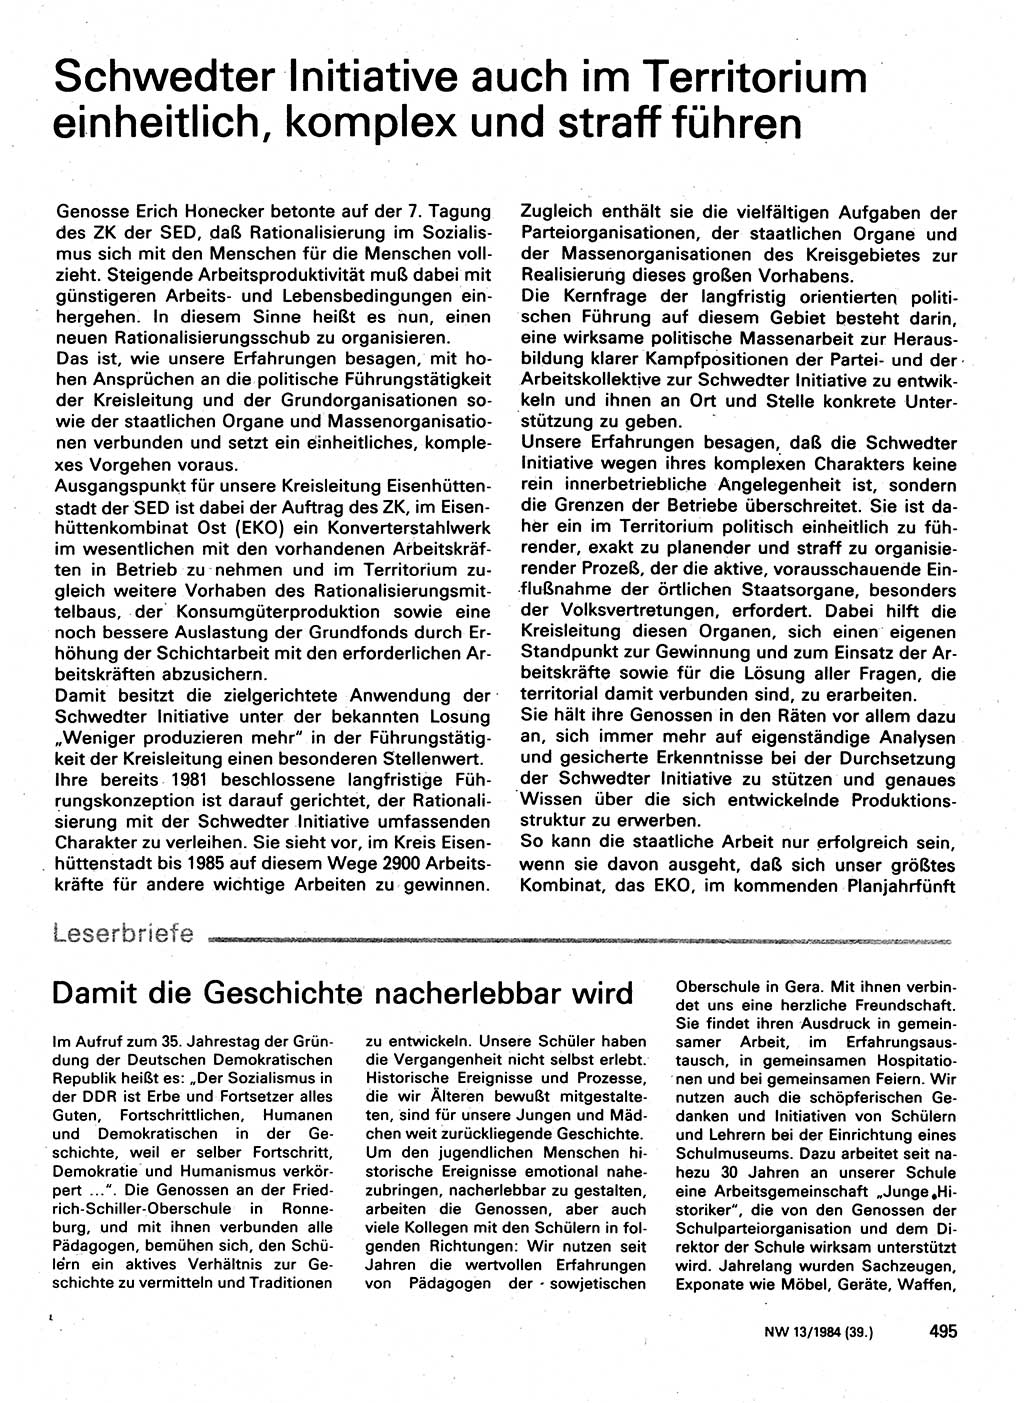 Neuer Weg (NW), Organ des Zentralkomitees (ZK) der SED (Sozialistische Einheitspartei Deutschlands) für Fragen des Parteilebens, 39. Jahrgang [Deutsche Demokratische Republik (DDR)] 1984, Seite 495 (NW ZK SED DDR 1984, S. 495)